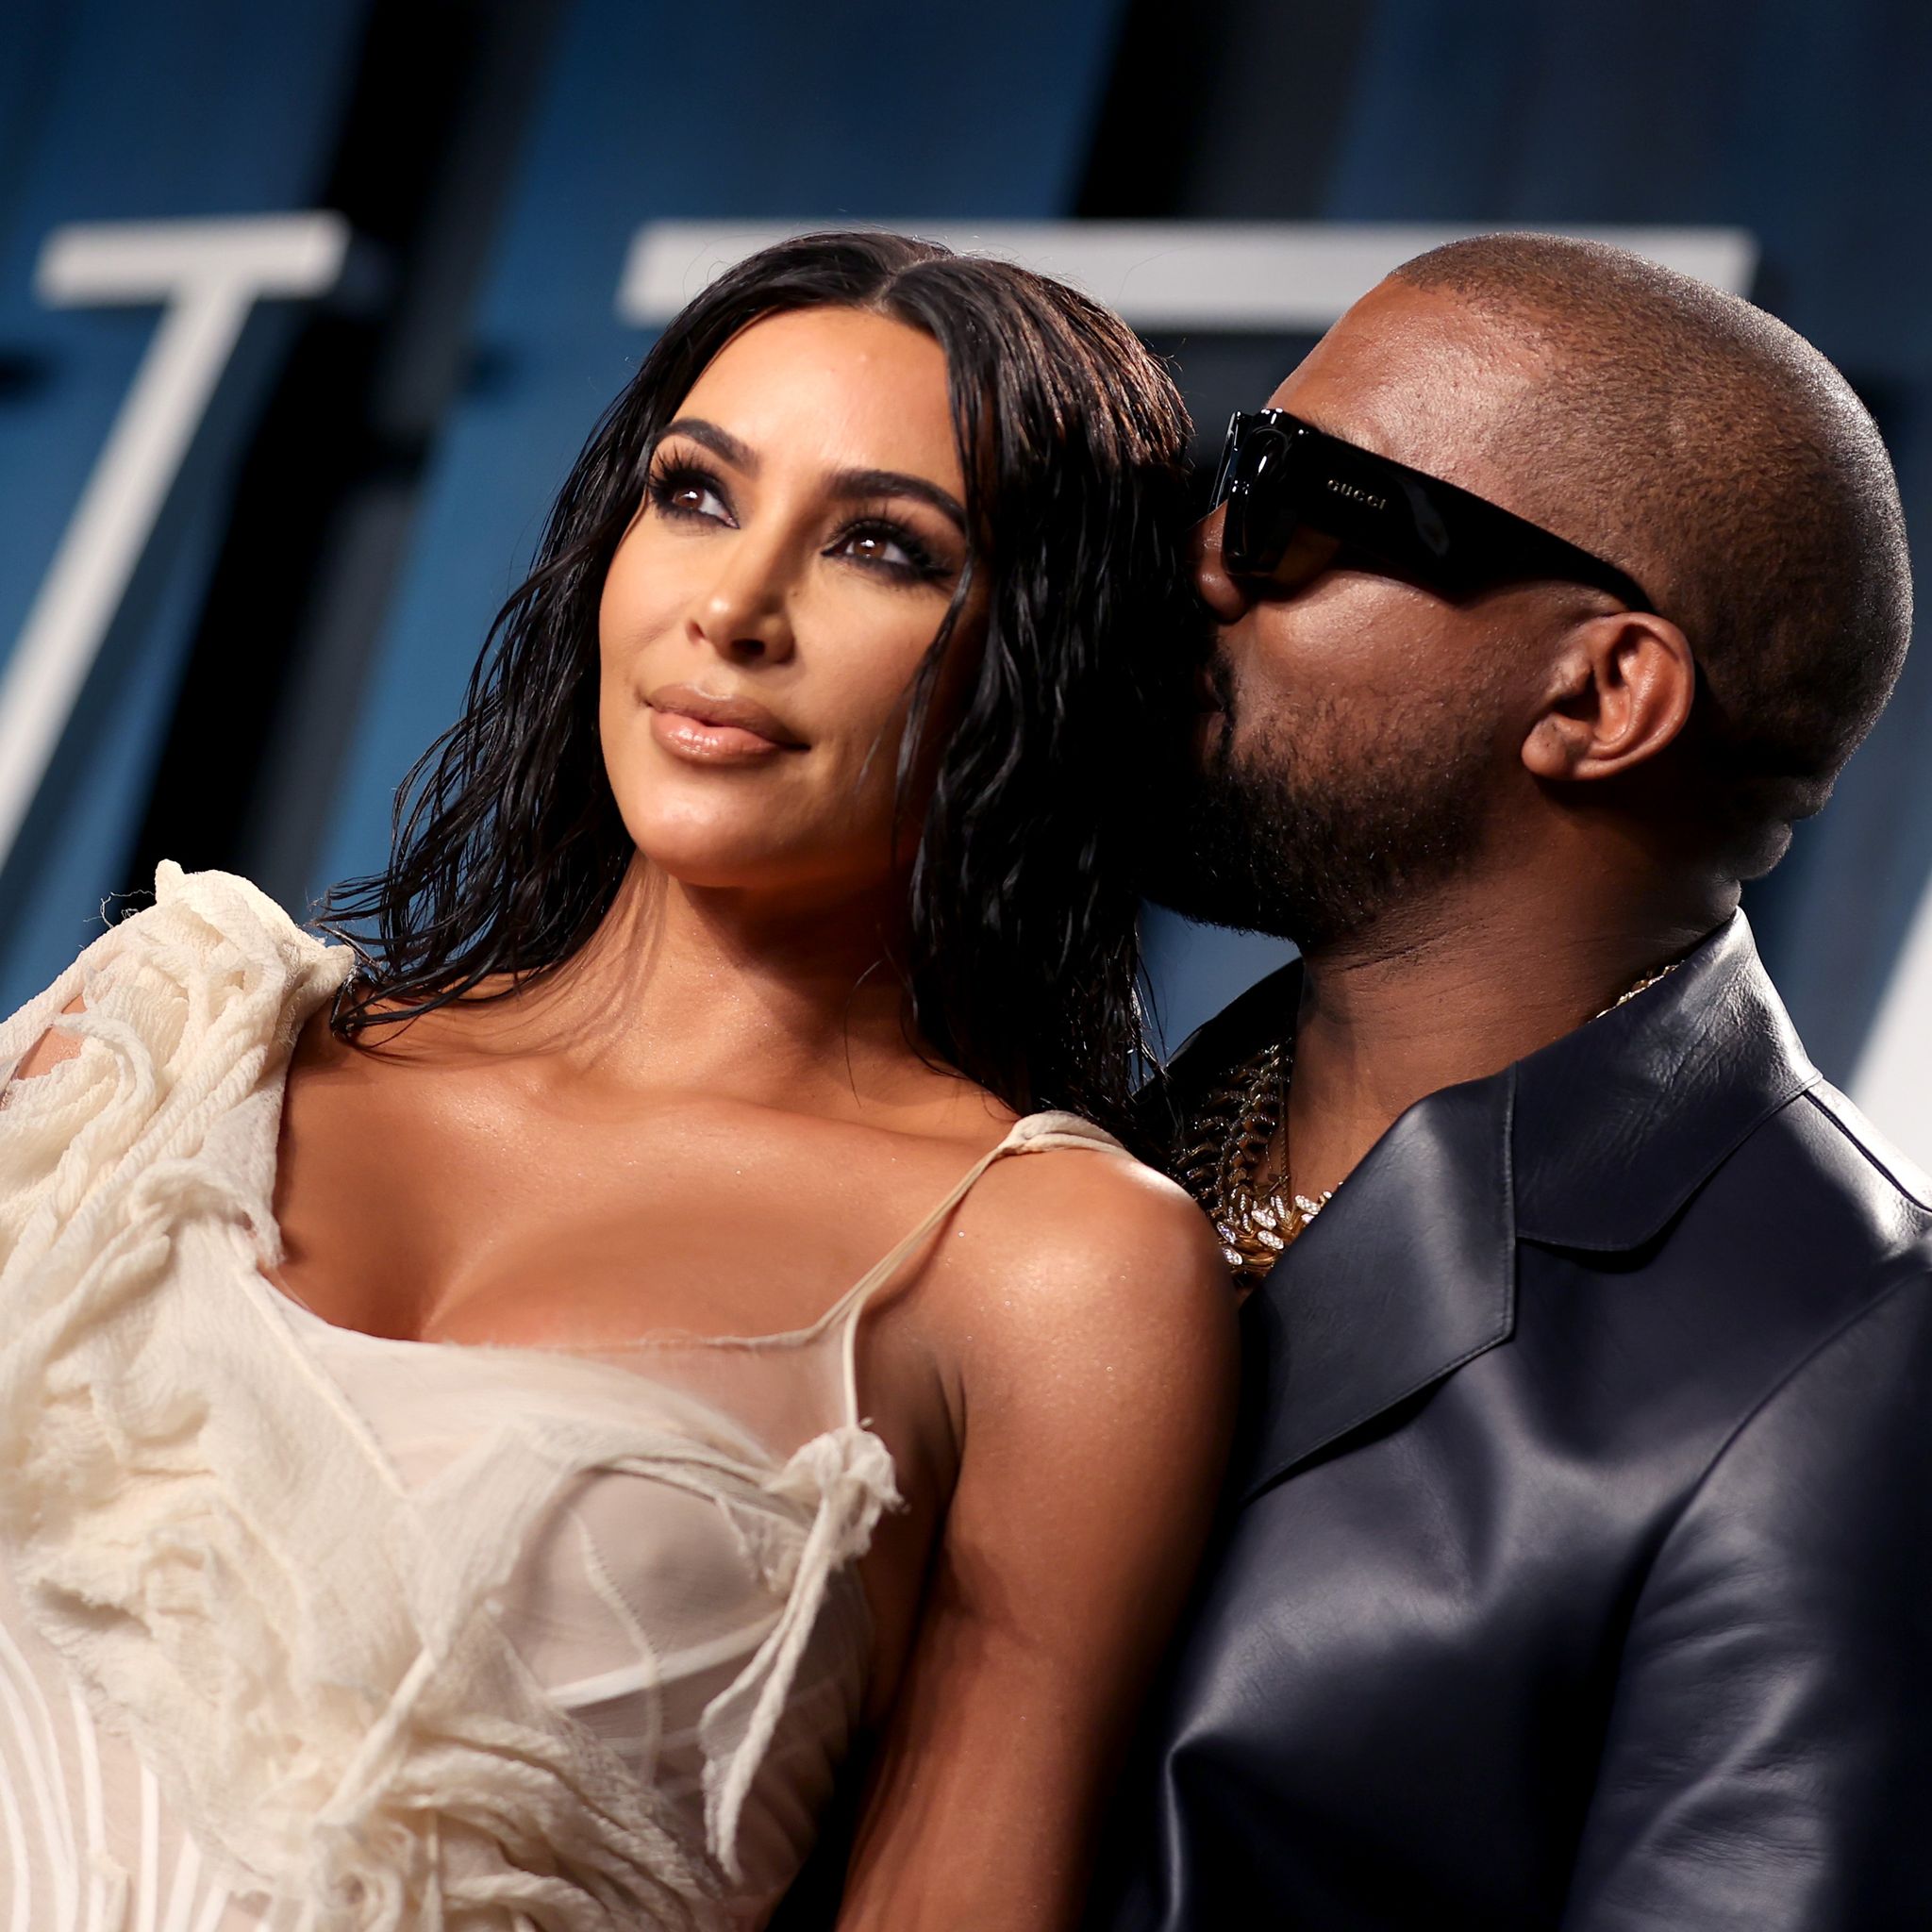 Kim Kardashian Shares First Photo With Kanye West Since Split